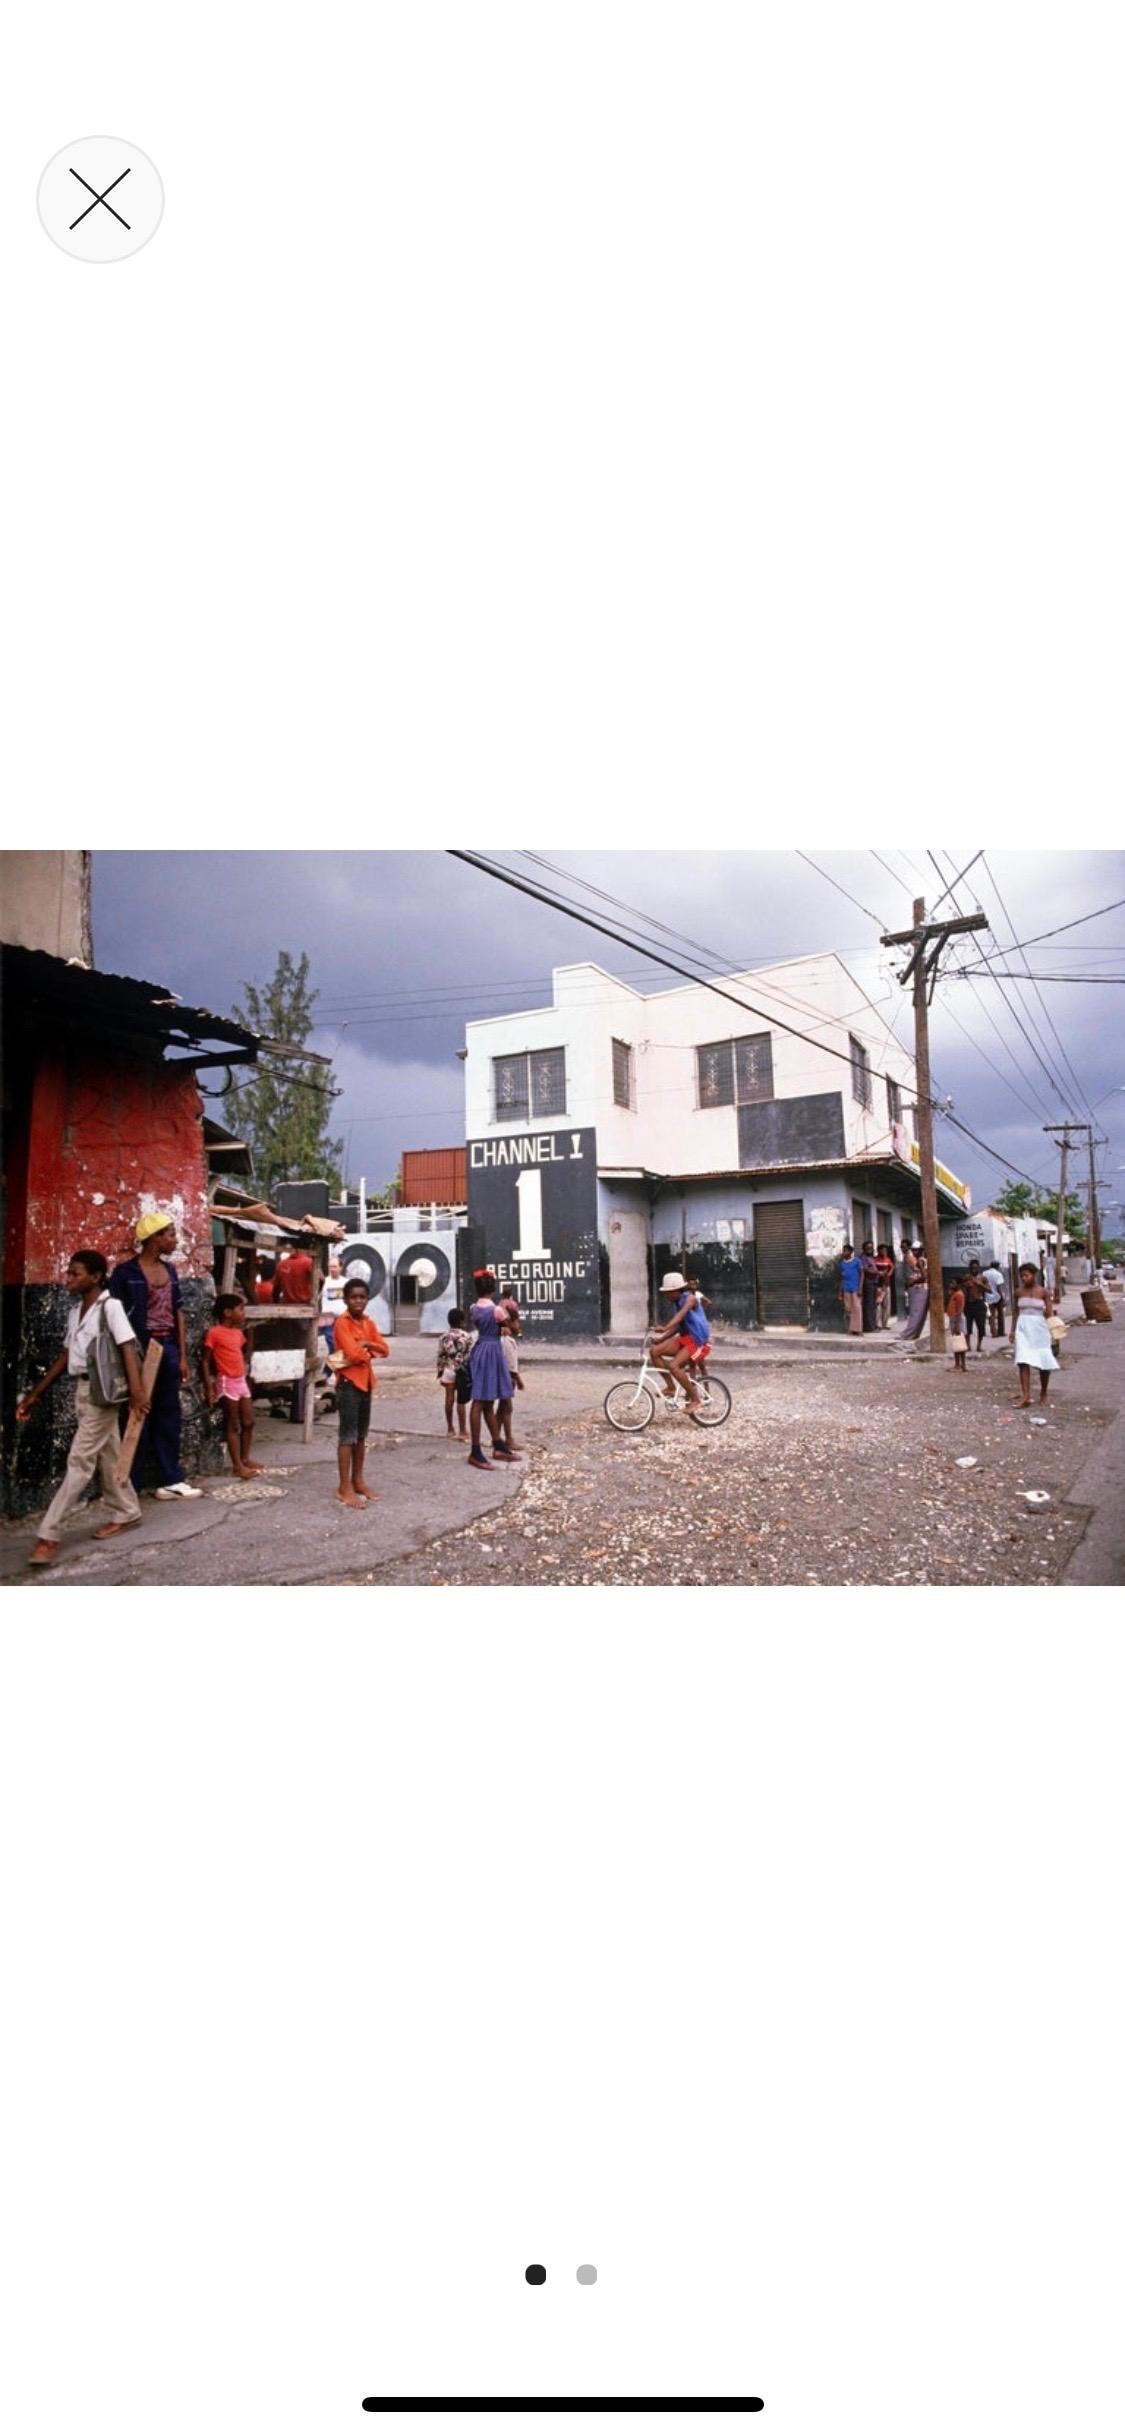 „Channel One Recording Studio Jamaica“ 1983 Limitierte Auflage Archivpigment  (Grau), Color Photograph, von Alain Le Garsmeur